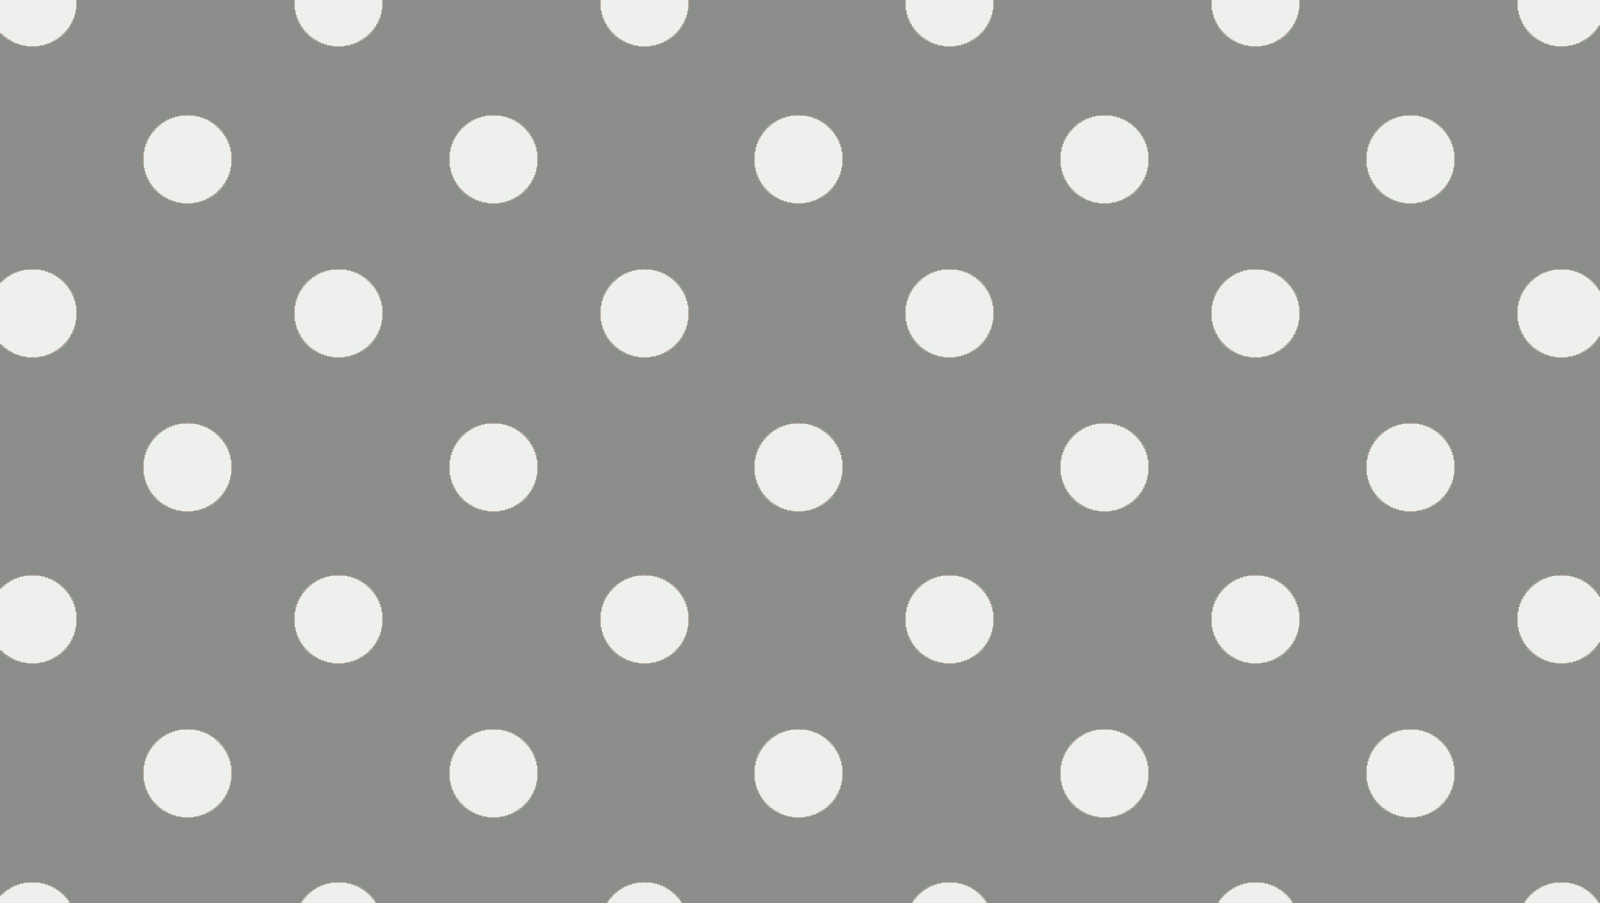 Cute Polka Dot Wallpaper - WallpaperSafari